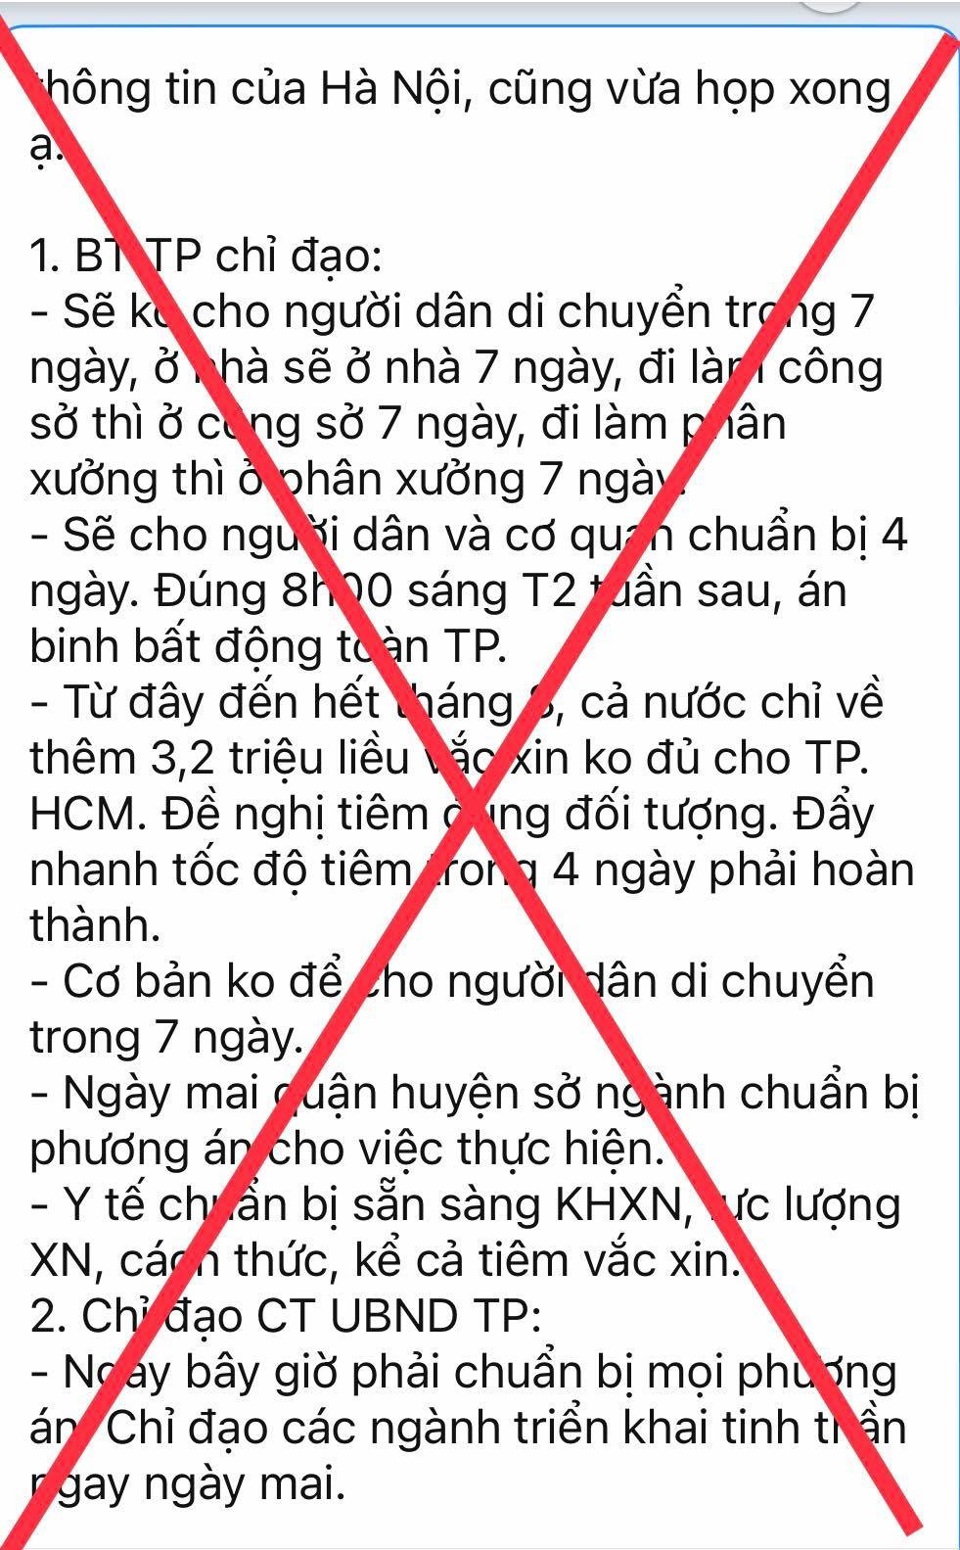 "Hà Nội cấm người dân ra đường trong 7 ngày" là tin giả - Ảnh 1